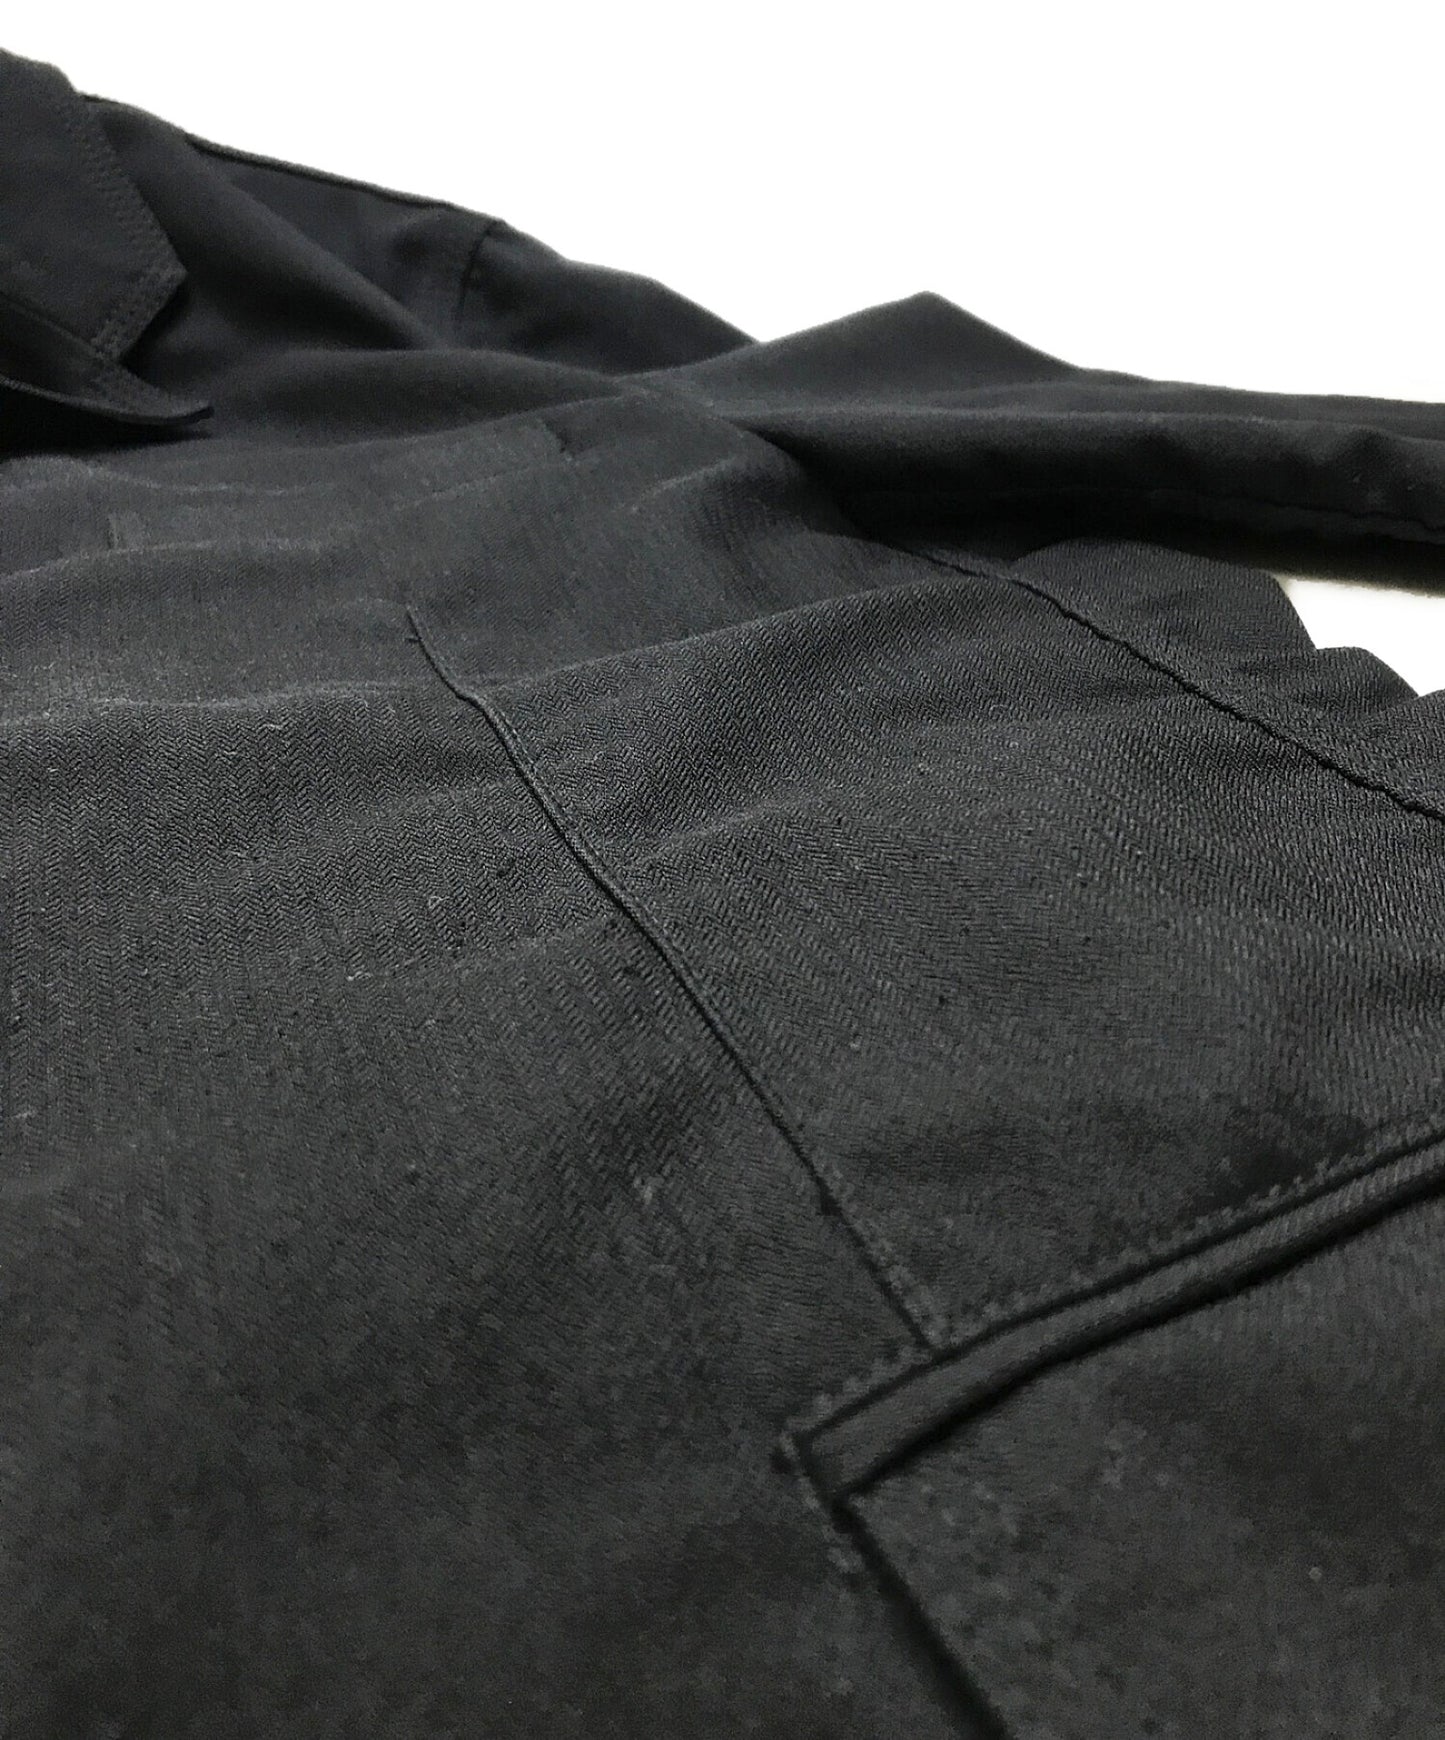 Comme des Garcons ผลิตภัณฑ์ย้อมสีพลาสติกหดตัวเสื้อแจ็คเก็ต HQ-J007